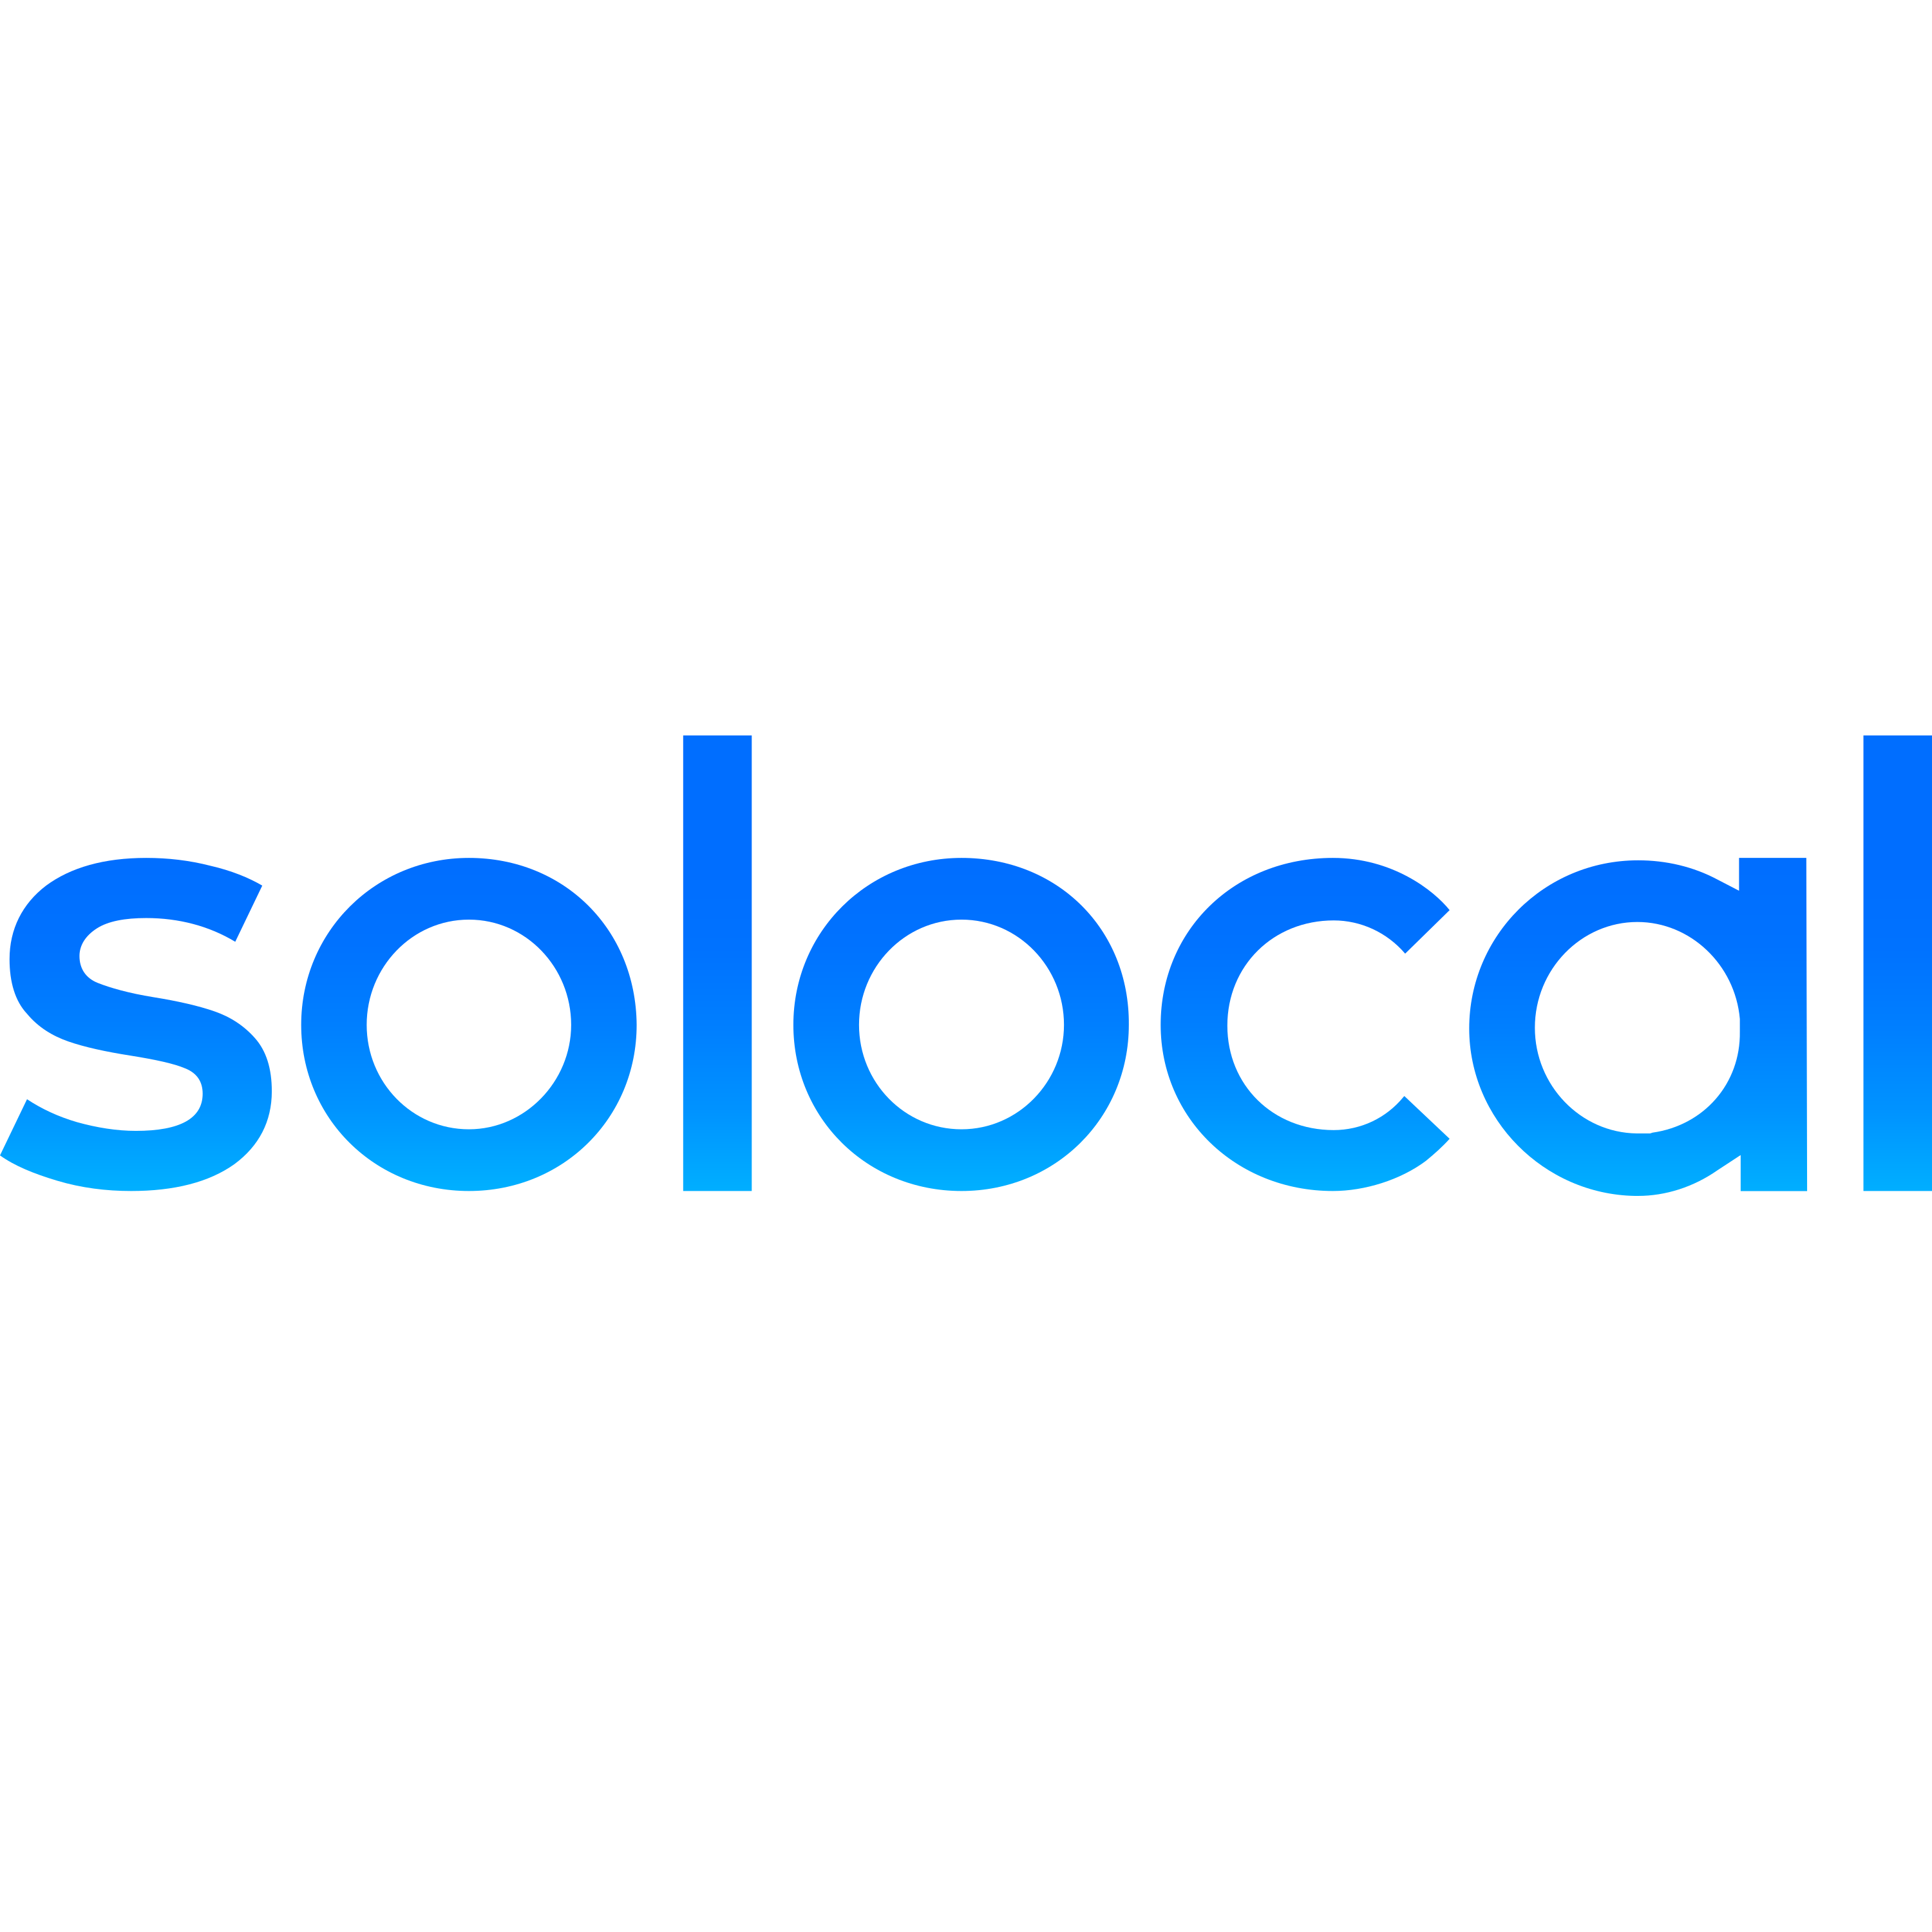 Solocal Logo  Transparent Image